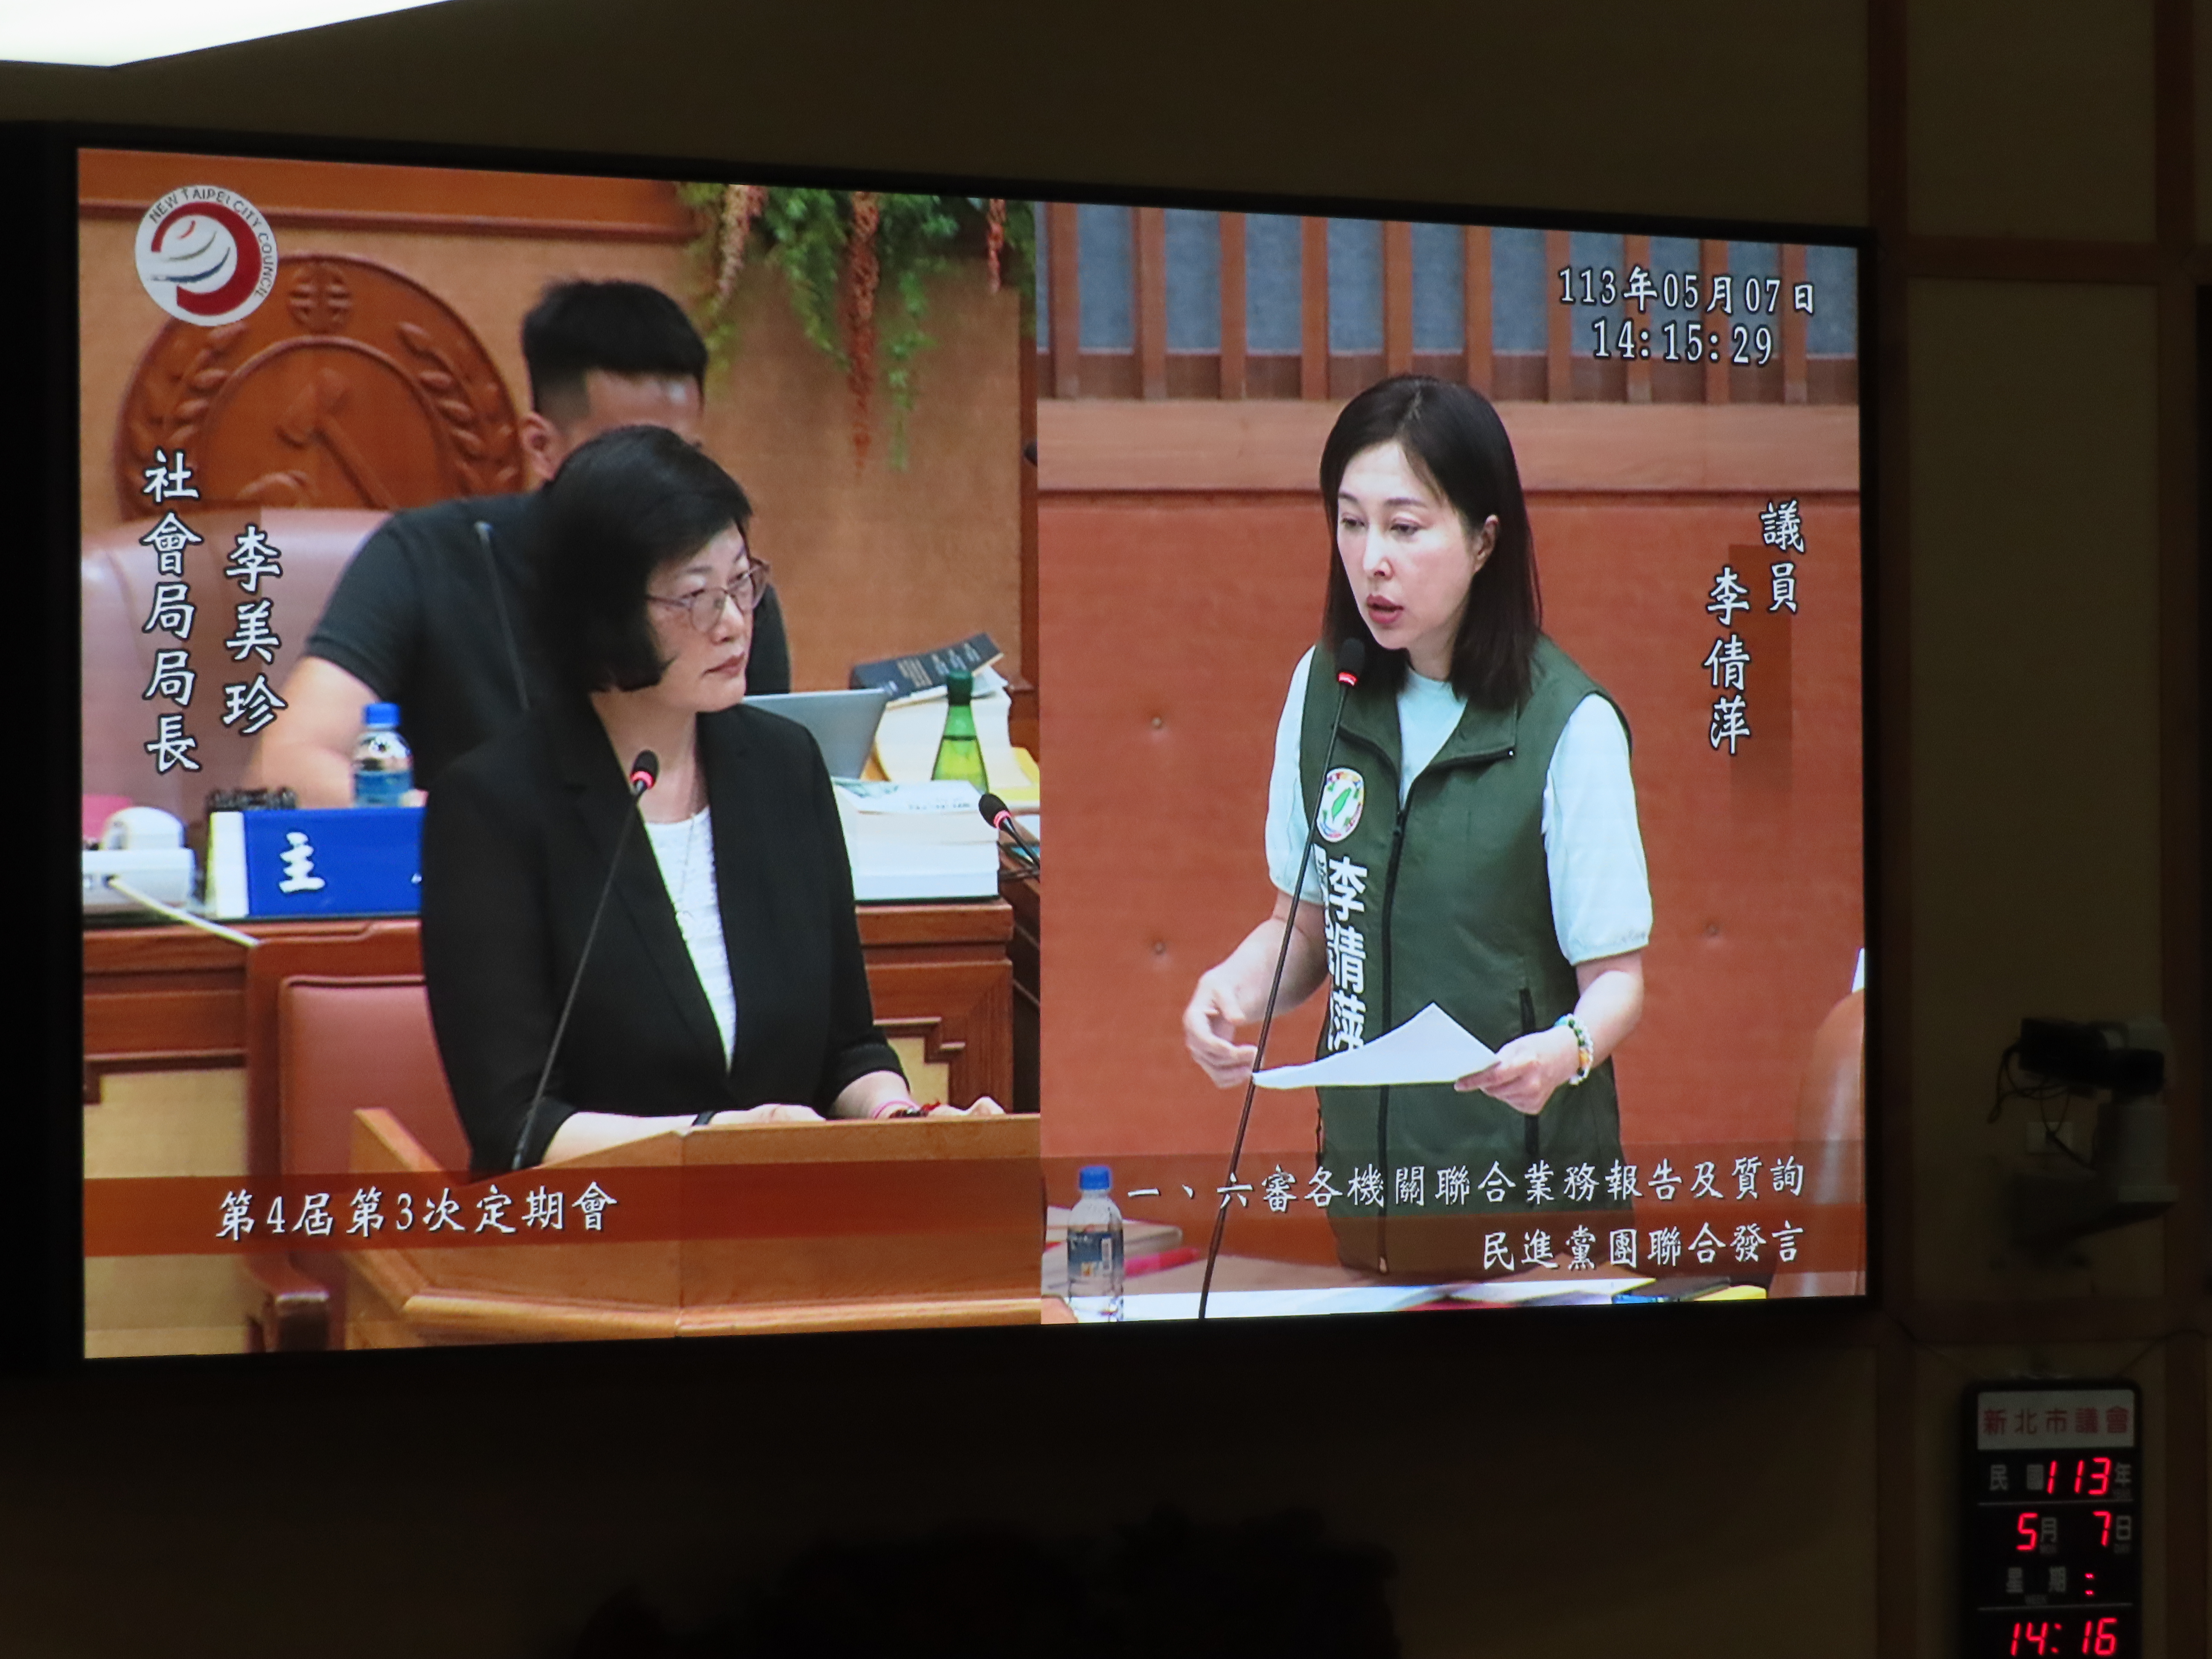 新北市议员李倩萍今天质询，要求市府针对居家保母监视设备提供相关补助。记者叶德正／摄影